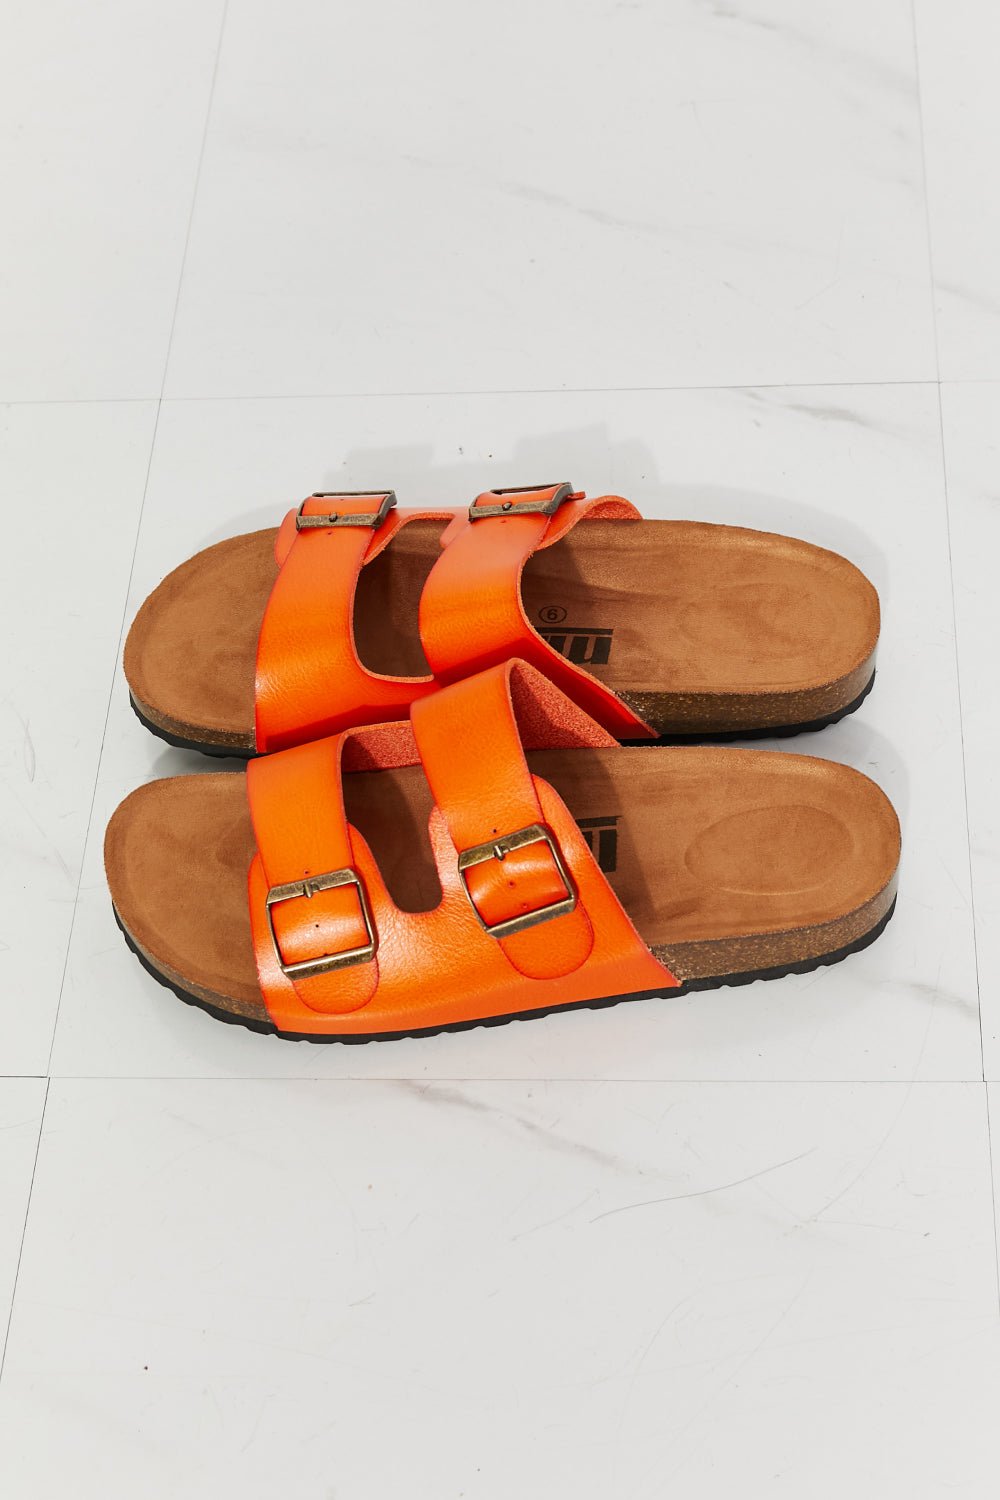 MMShoes Feeling Alive Double Banded Slide Sandals in Orange - pvmark